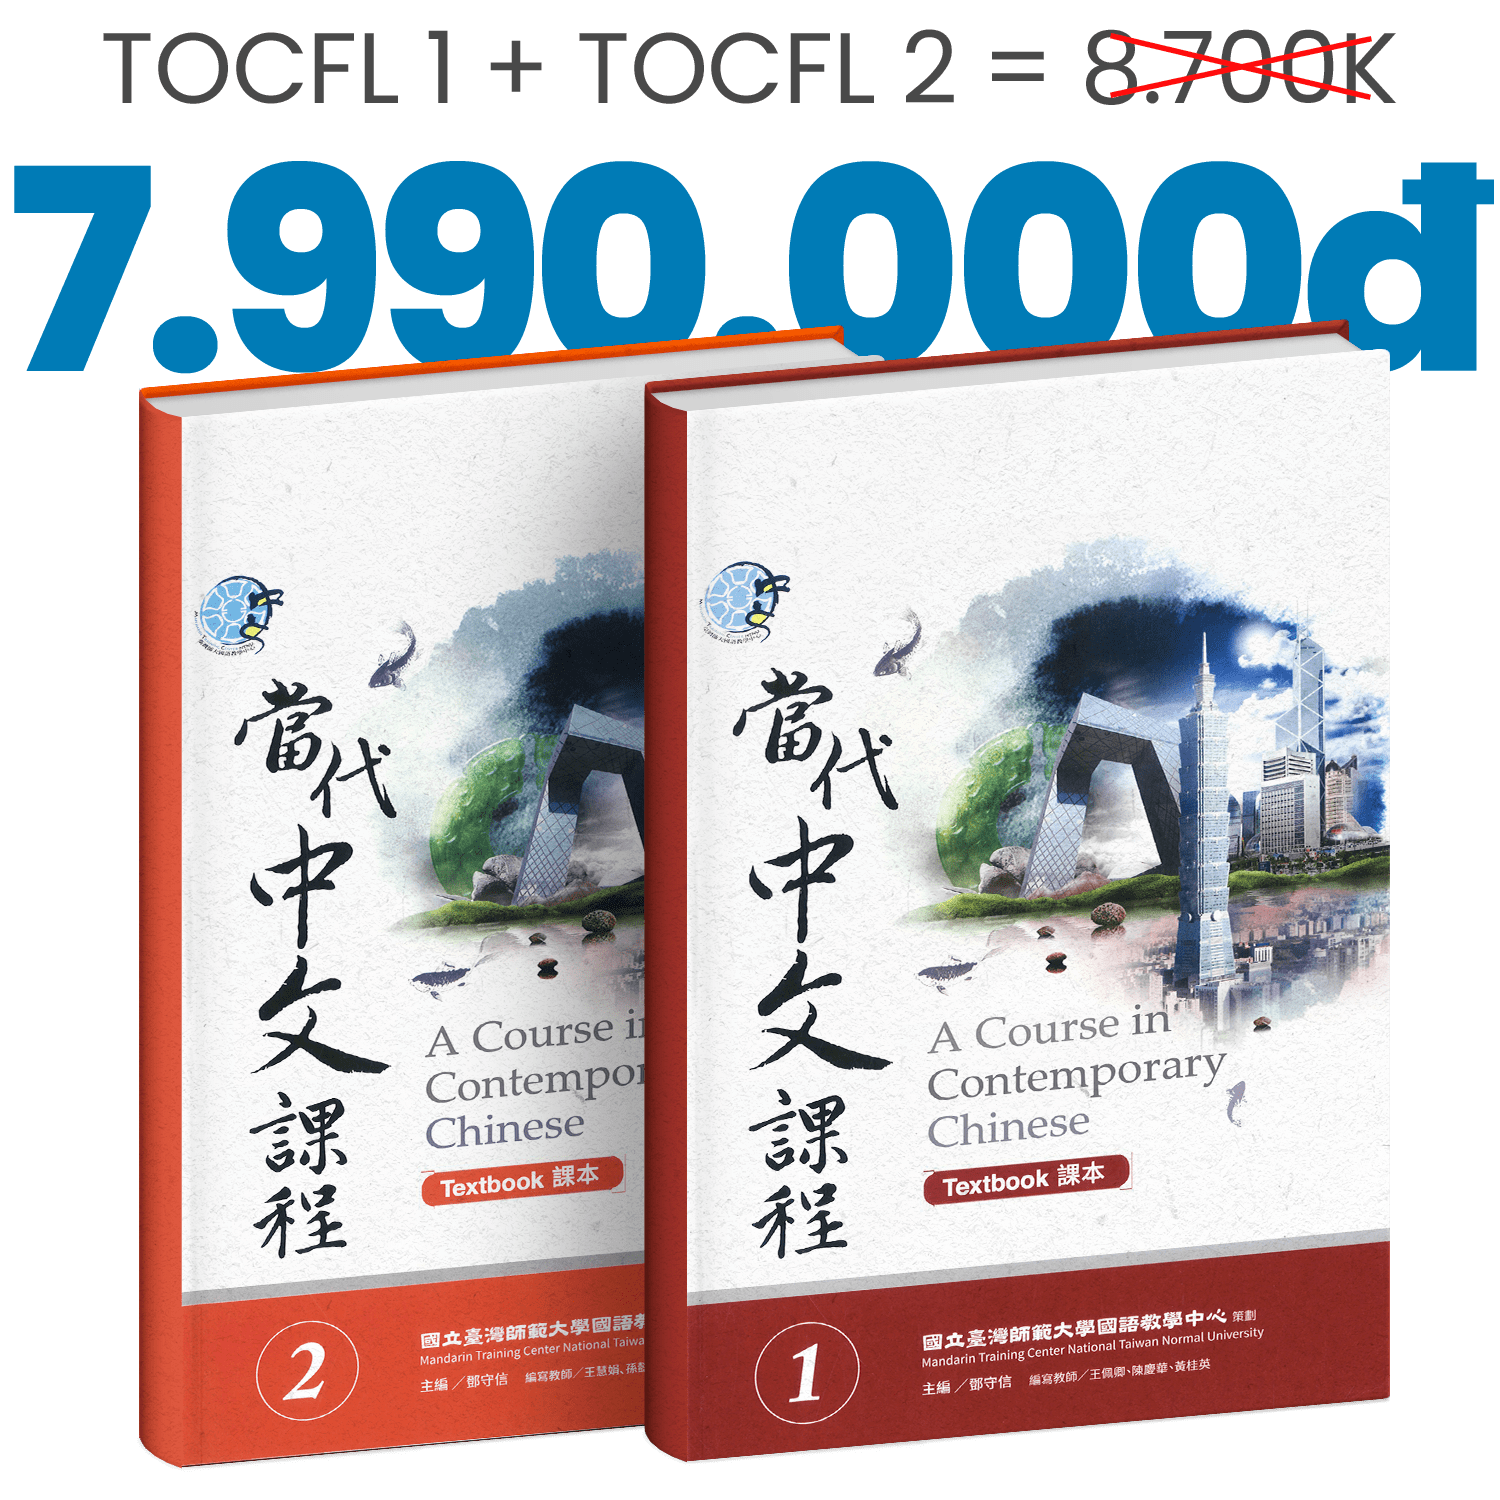 Bảng giá học phí lớp tiếng trung combo tocfl và tocfl 2 taiwan diary